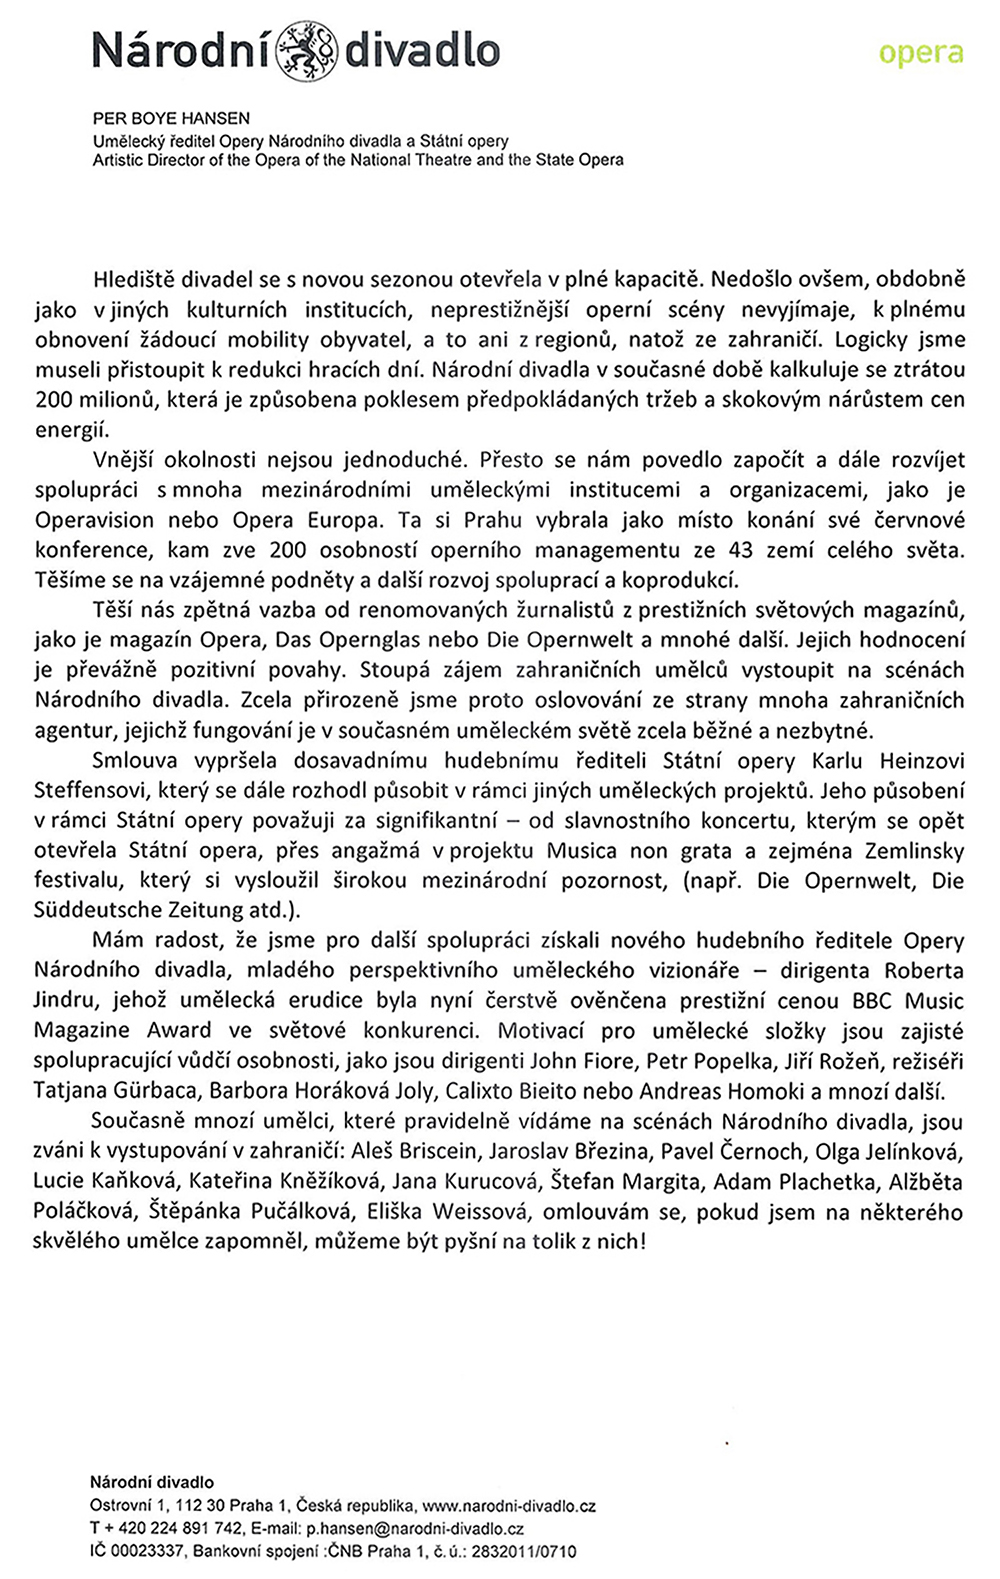 Dopis Pera Boye Hansena z 3. června 2022, strana č. 2 (zdroj Helena Havlíková)